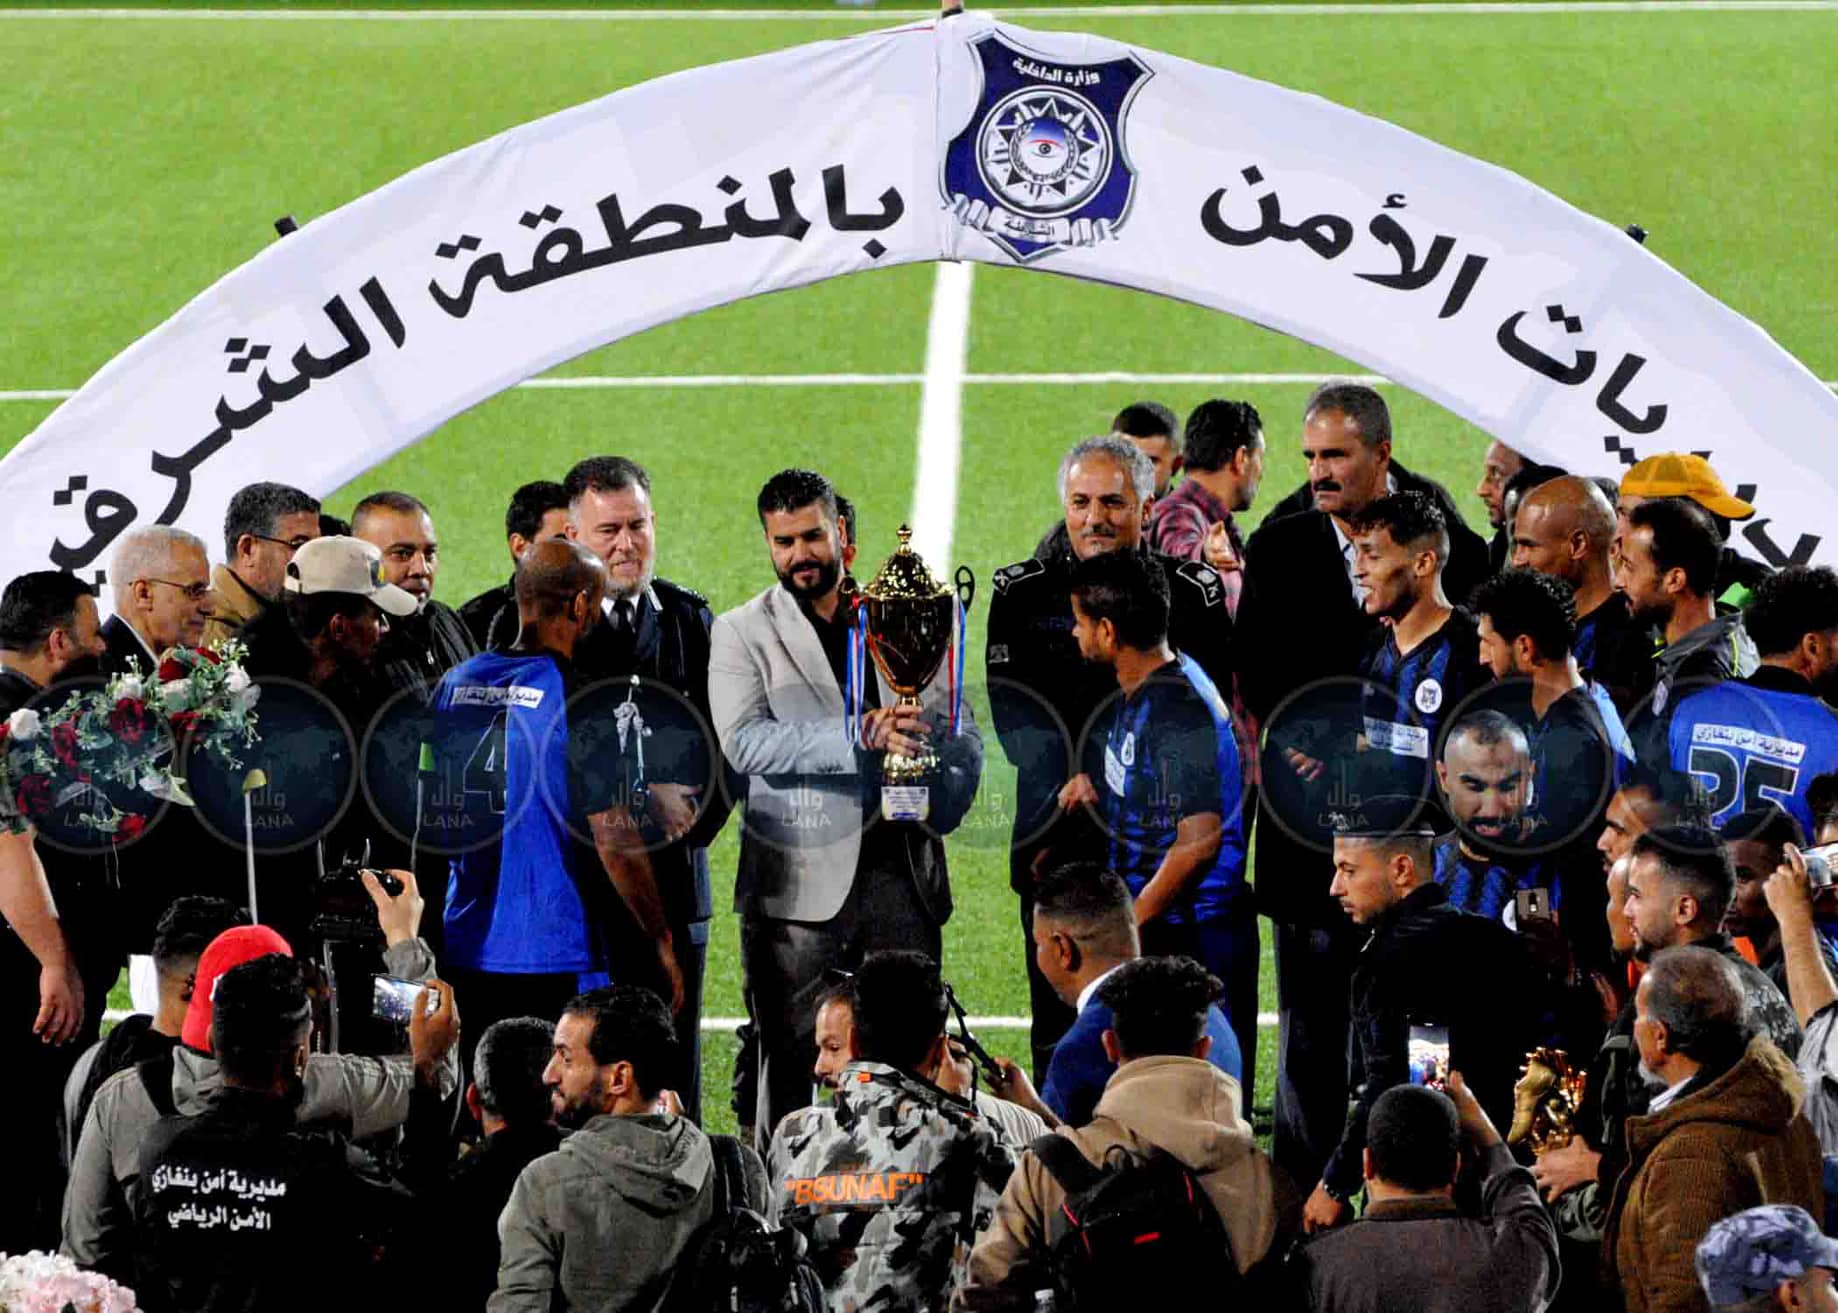 دوري اتحاد الشرطى الرياضي للمنطقة الشرقية ينتهي بفوز بنغازي